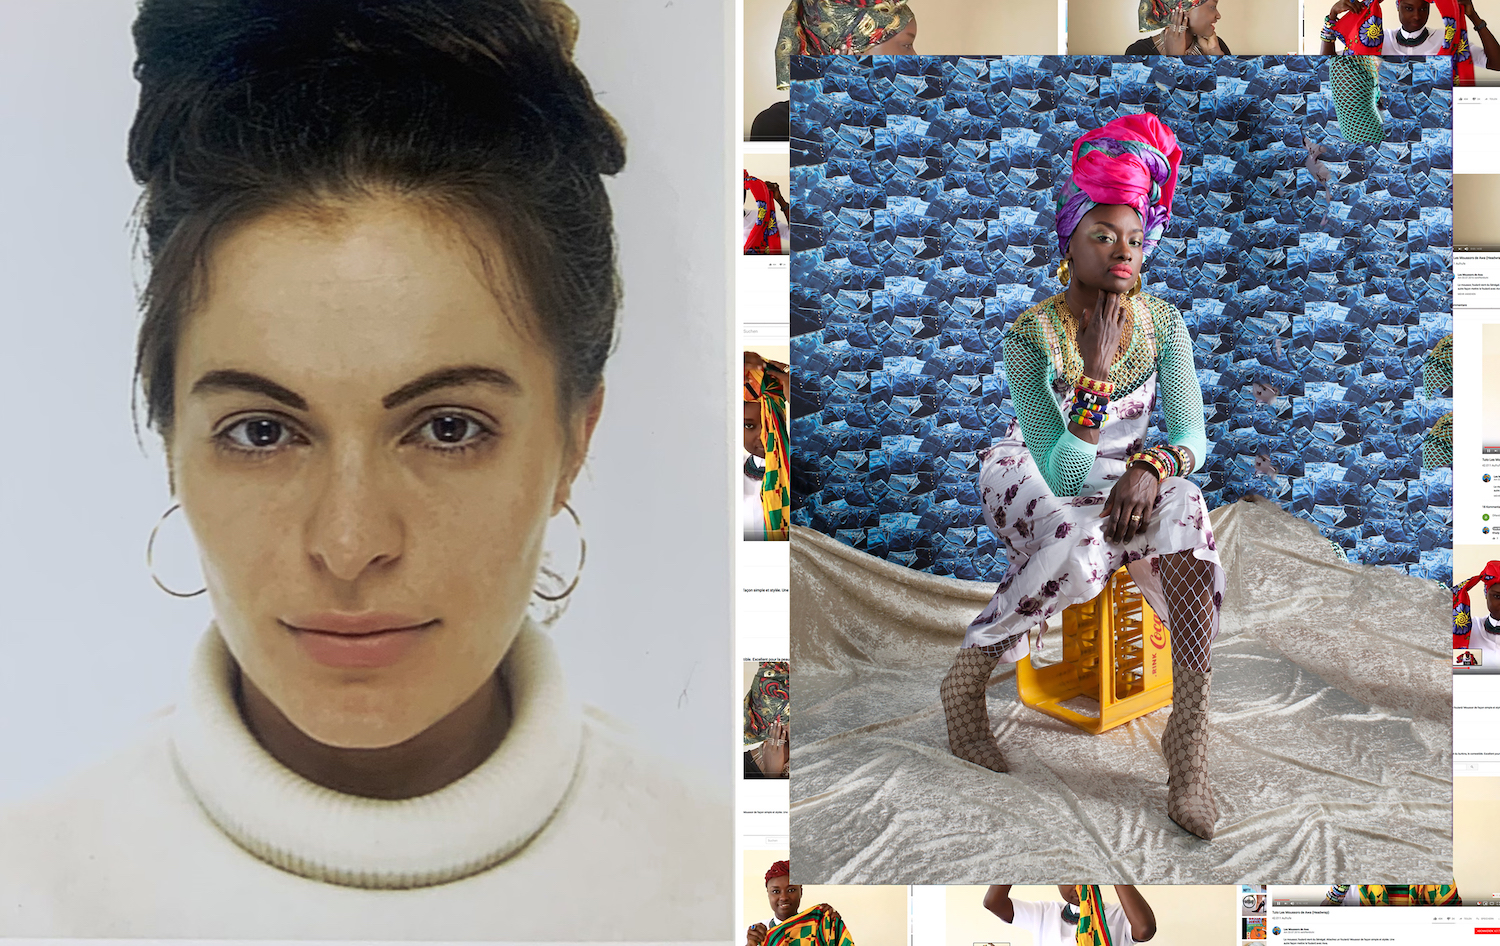 Links: Passfoto der Künstlerin Anna Ehrenstein. Rechts: Eine Foto-Arbeit von Anna Ehrenstein zeigt eine Frau in bunter Kleidung auf einem Getränkekasten sitzend.